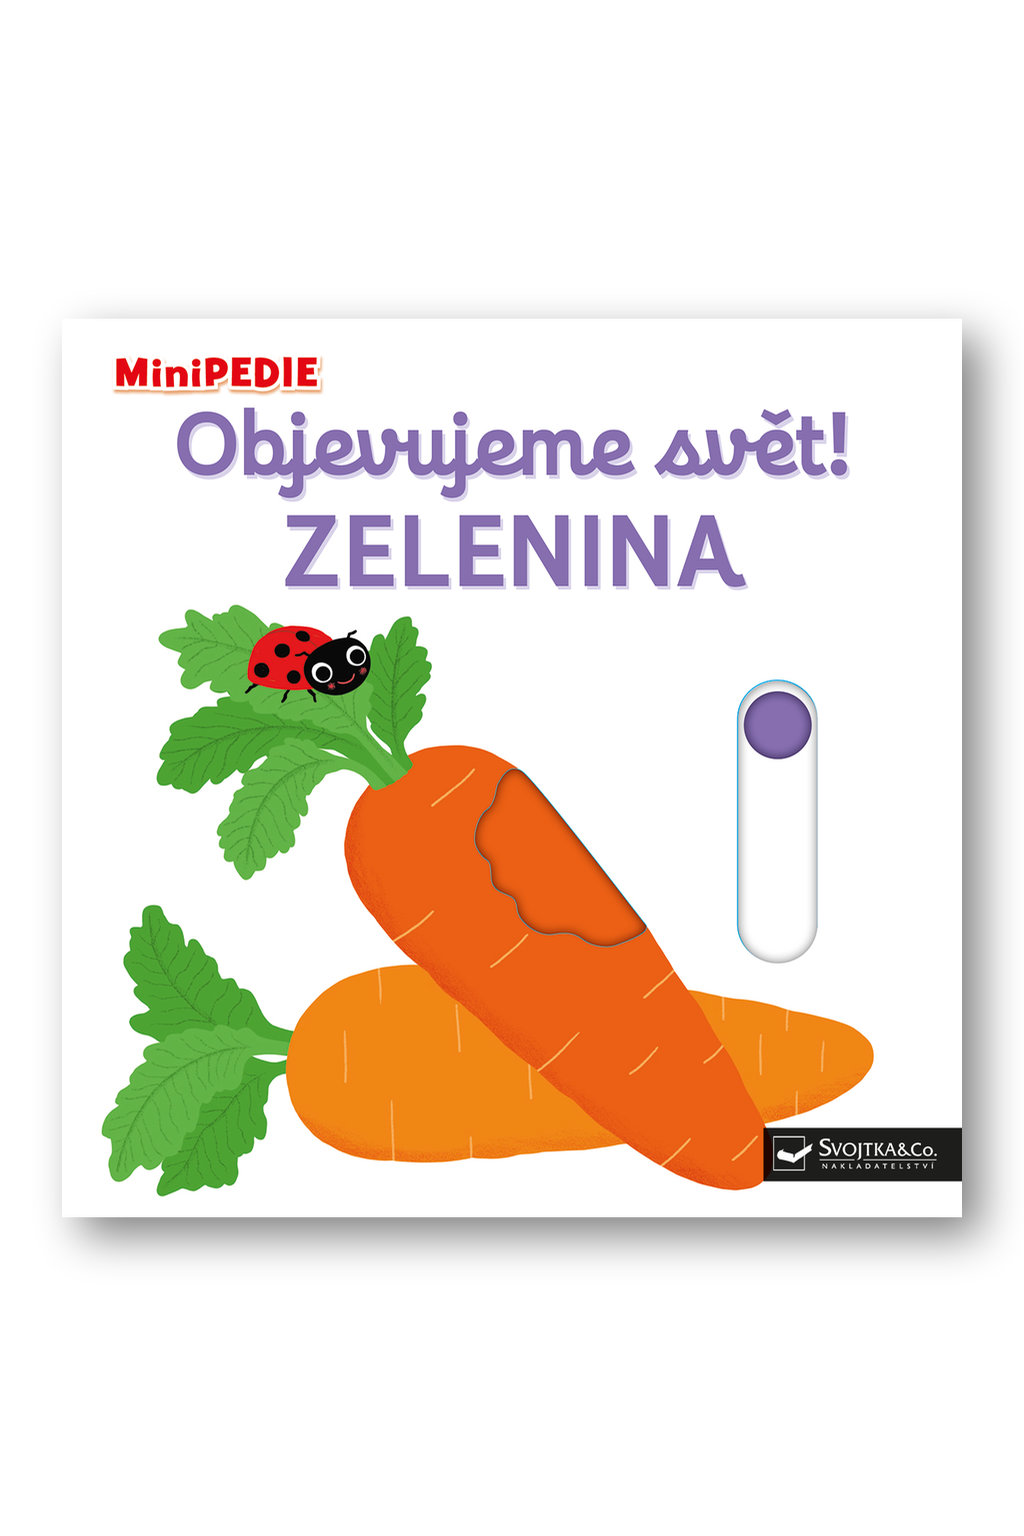 MiniPEDIE - Objevujeme svět! Zelenina Nathalie Choux